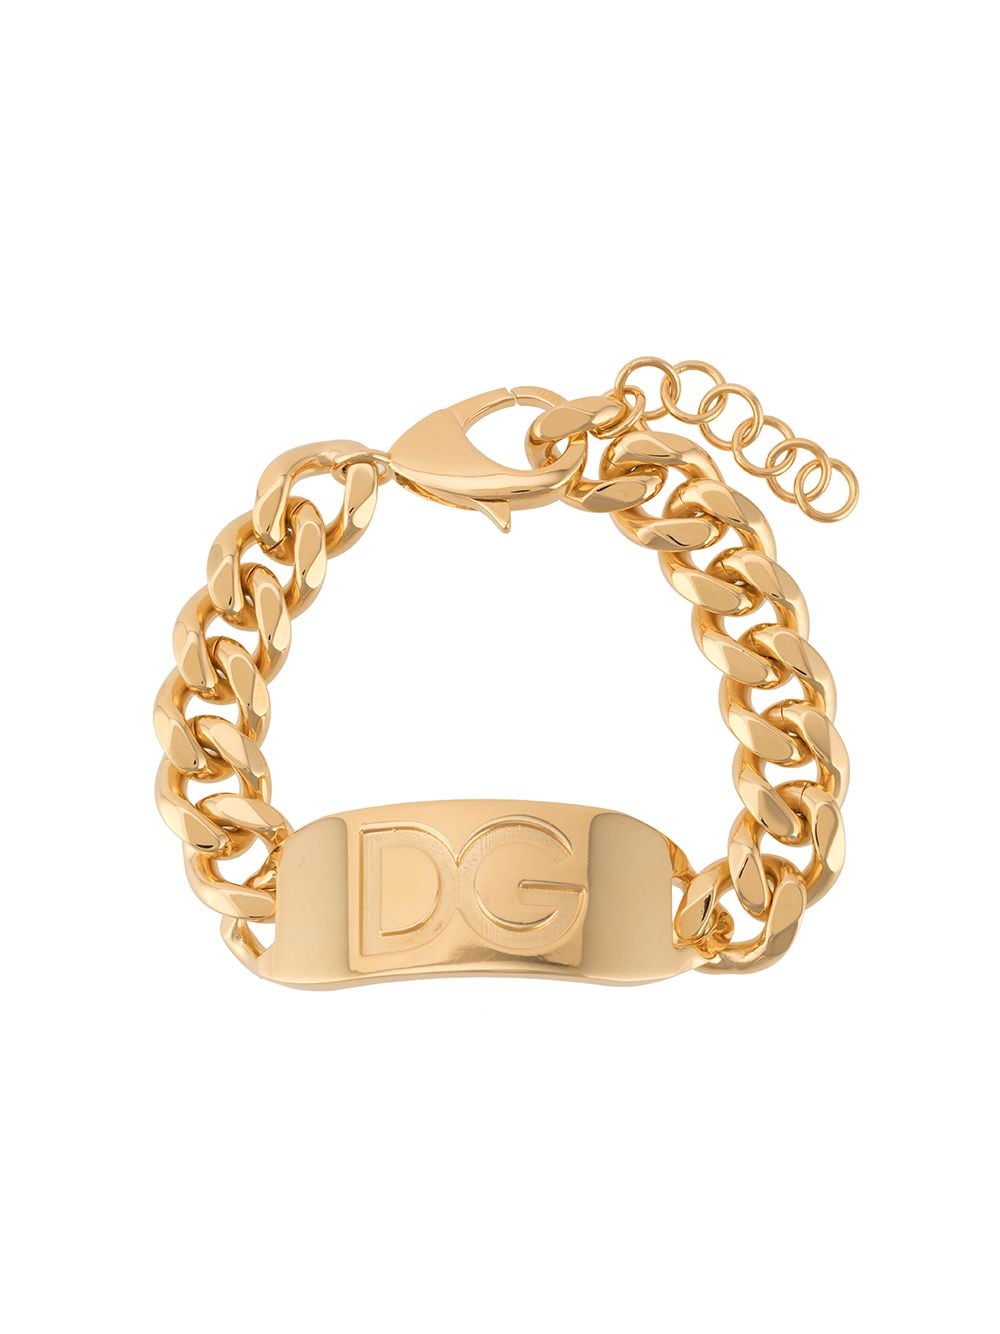 Dolce & Gabbana цепочный браслет с гравировкой логотипа